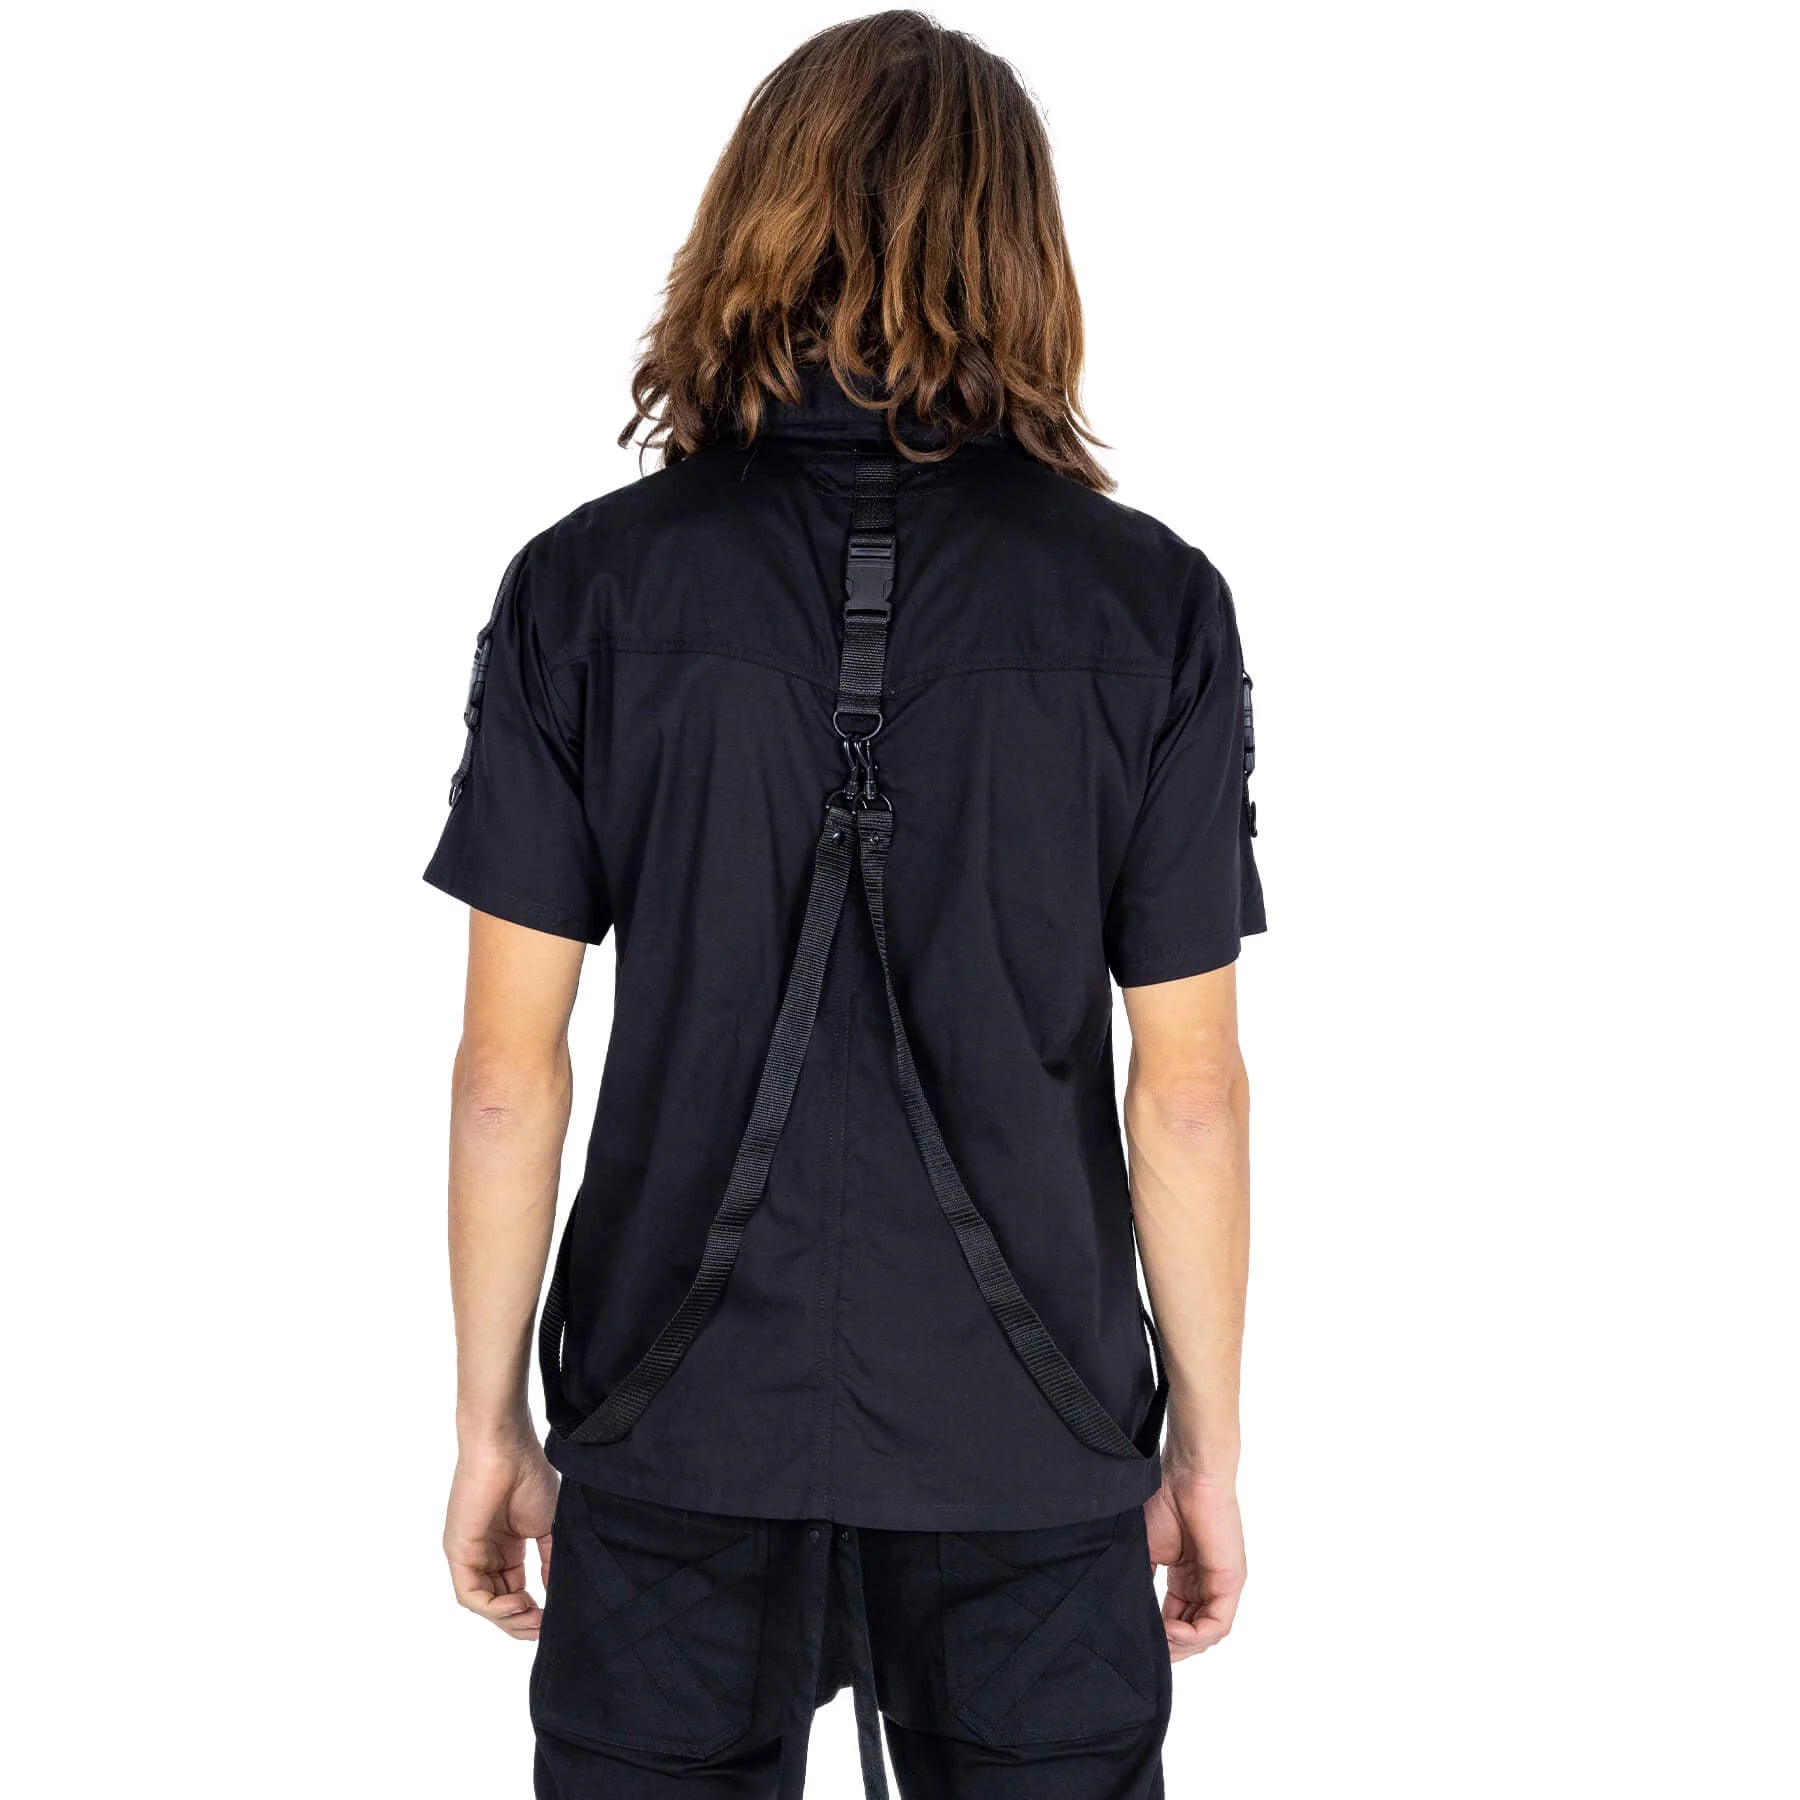 Rückseite des schwarzen, kurzärmligen Hemdes LEONIDAS SHIRT mit Riemen und Schnallen von Poizen Industries